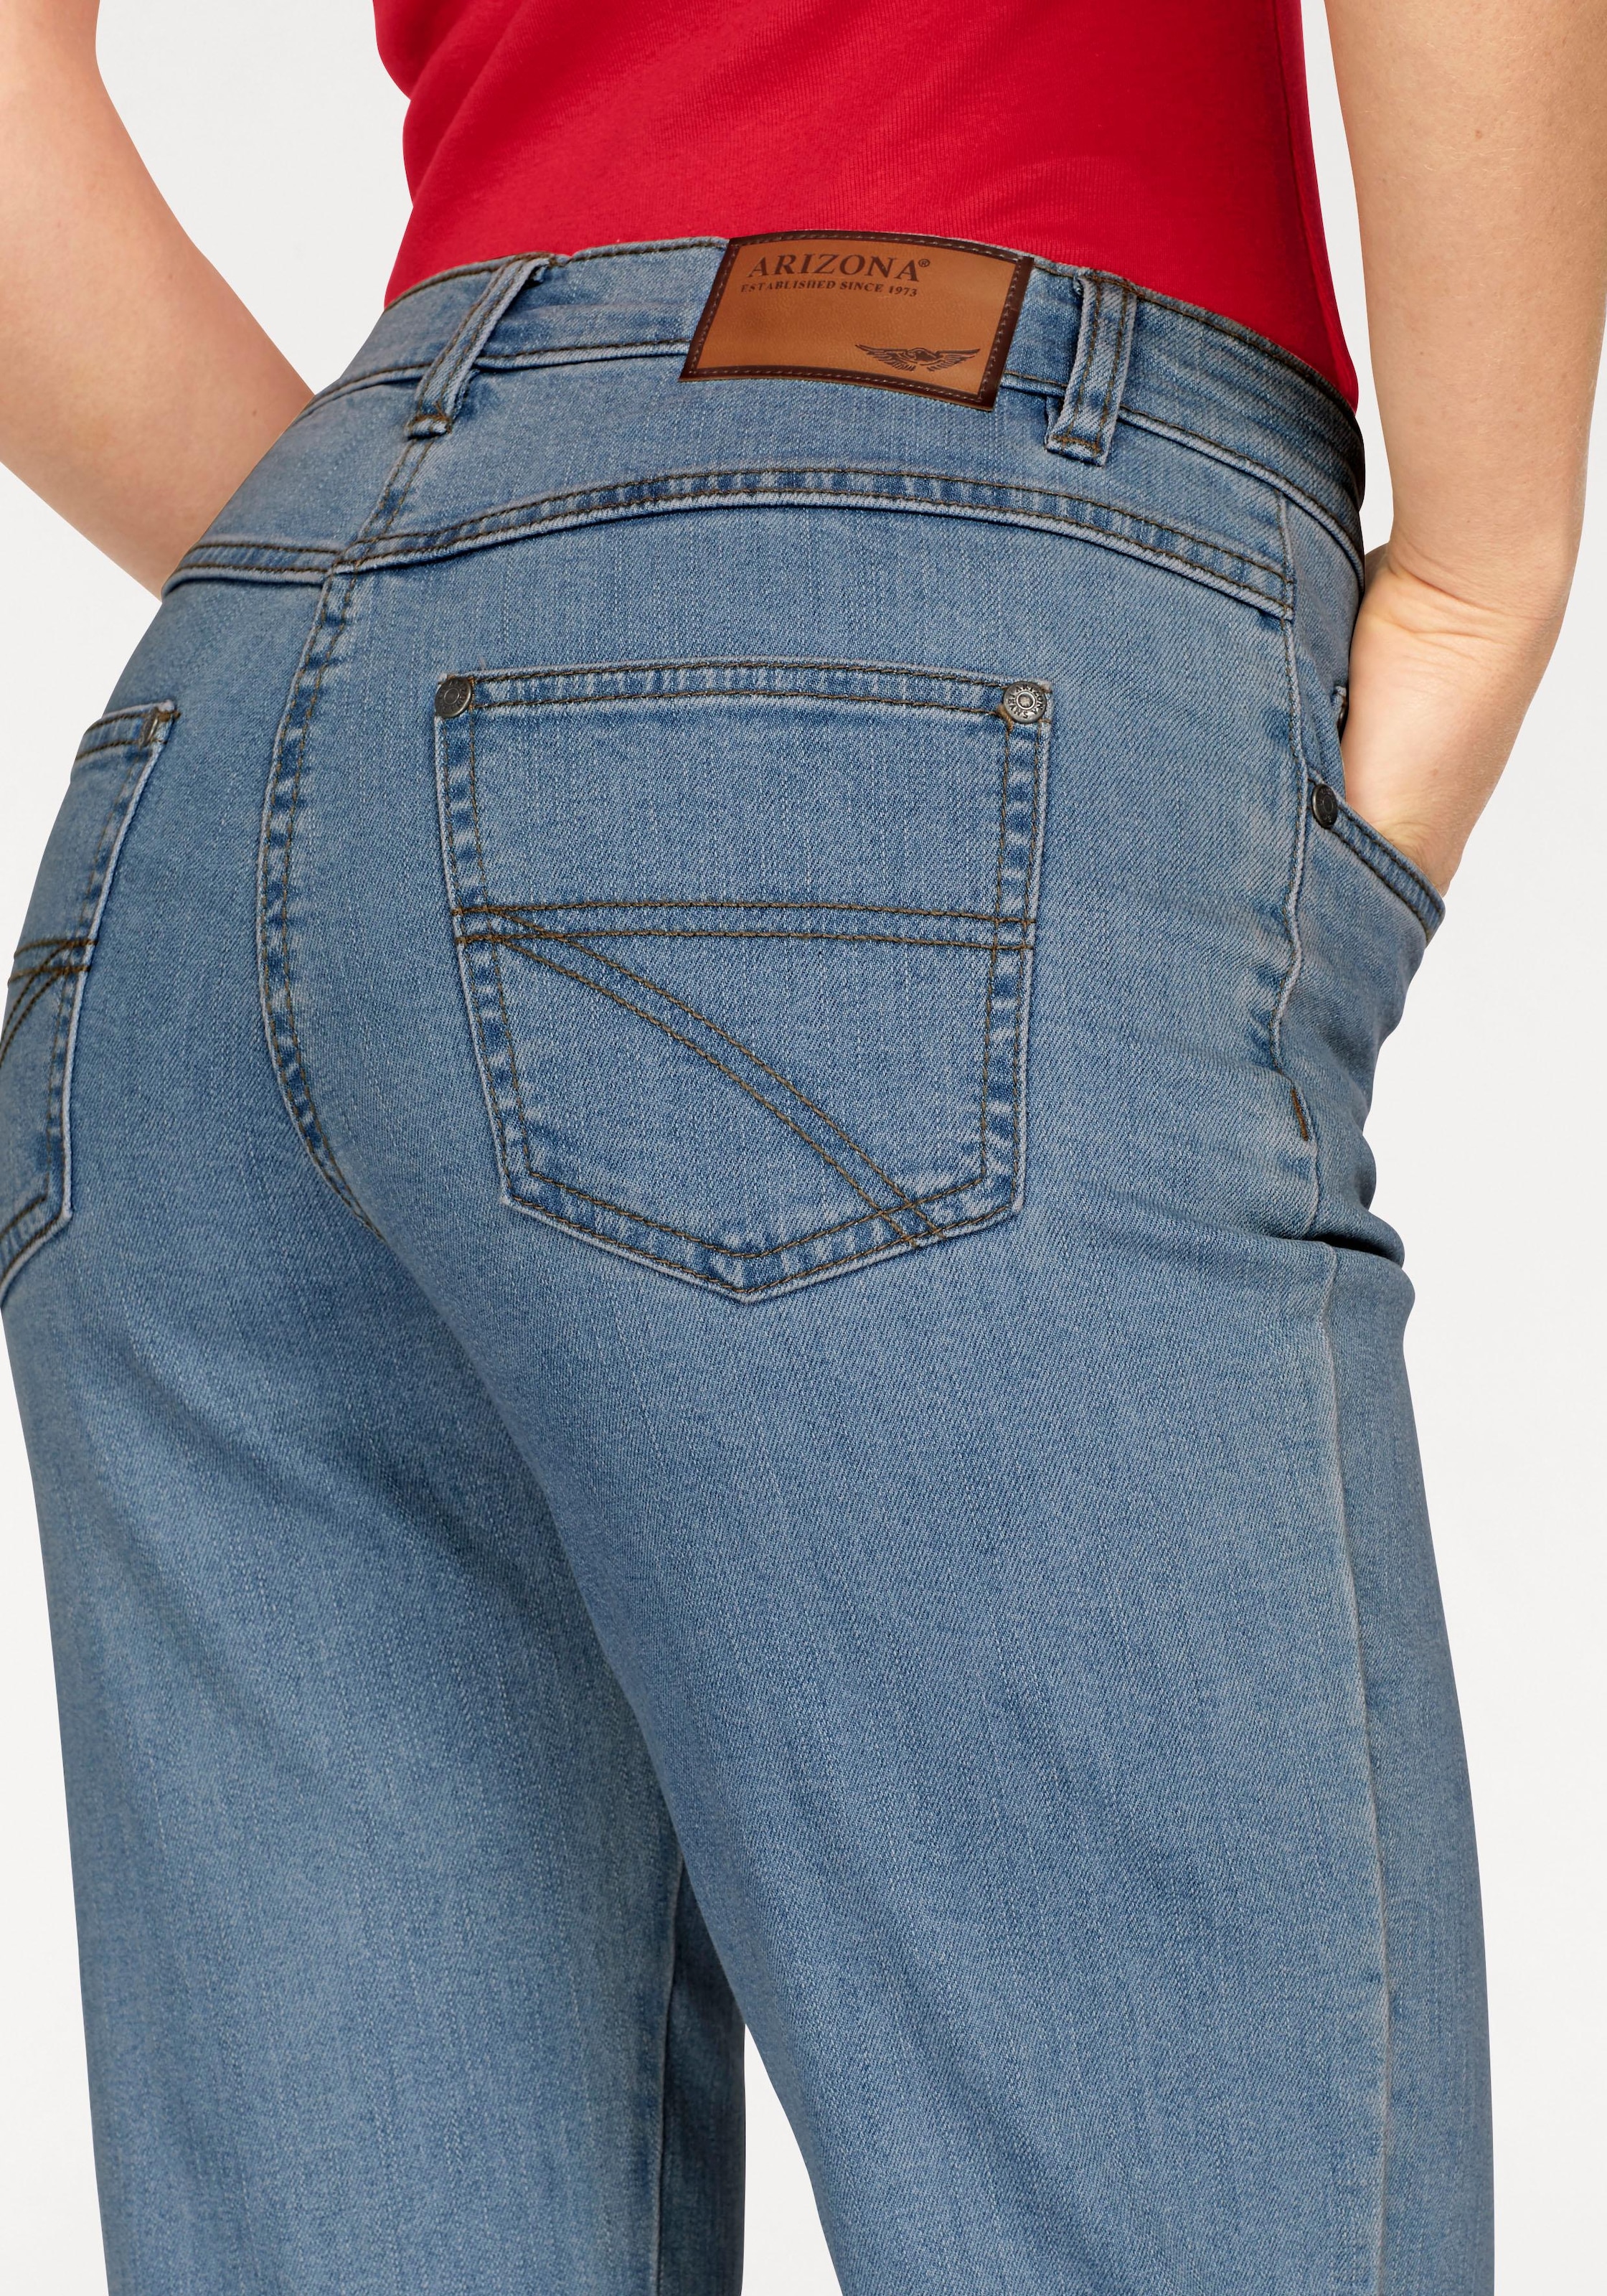 »Annett« mit BAUR Gerade Oberschenkeln Jeans bequemen | Arizona